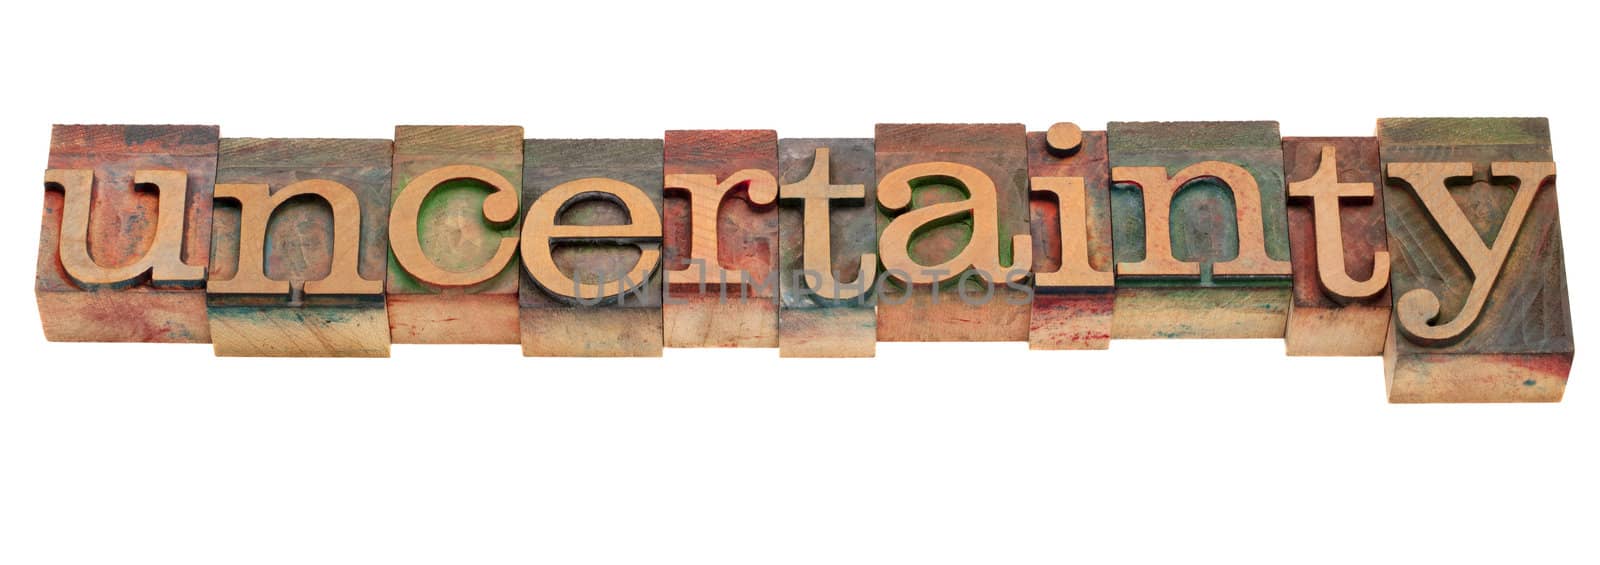 uncertainty word in vintage letterpress type by PixelsAway